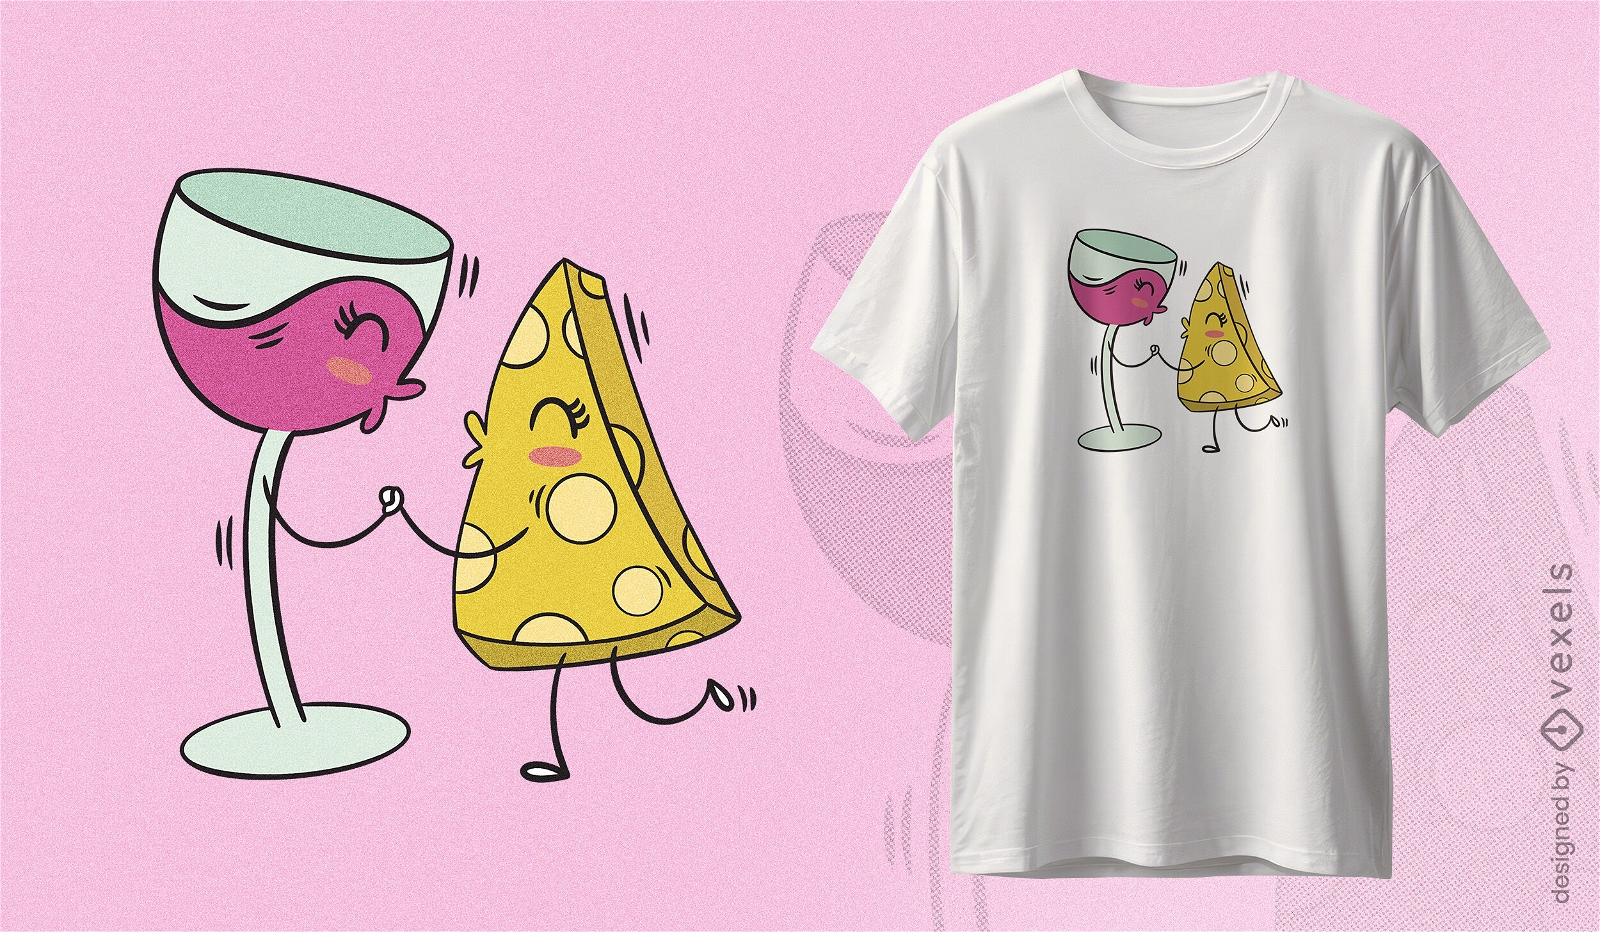 Dise?o de camiseta de conversaci?n de vino y queso.